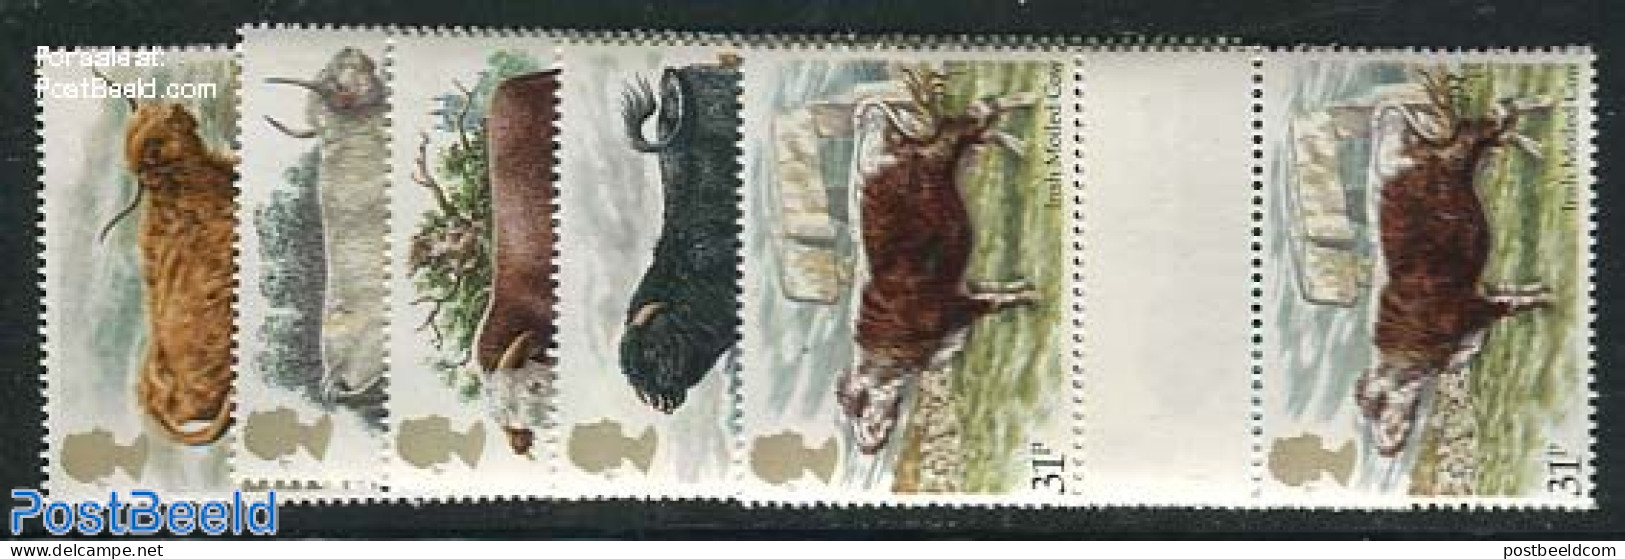 Great Britain 1984 Cattle 5v, Gutter Pairs, Mint NH, Nature - Cattle - Ongebruikt